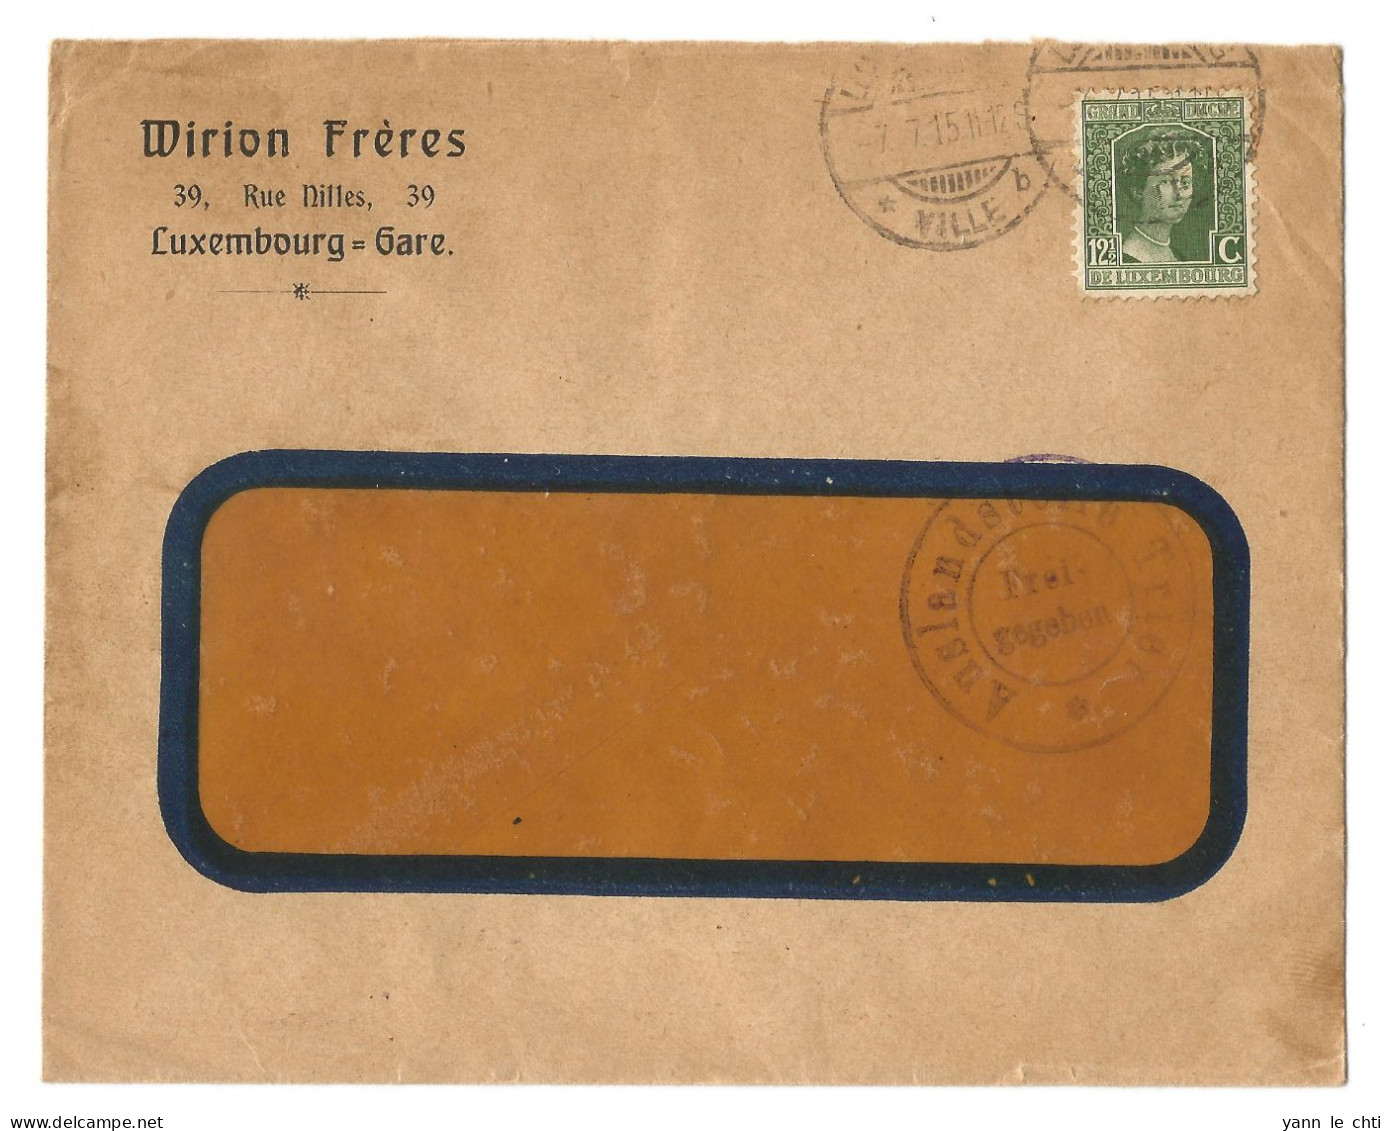 Enveloppe Brief 1915 Wirion Freres Luxembourg Gare 12 1/2 Cents Auslandstelle Trier Frei Gegeben Censure - 1914-24 Maria-Adelaide